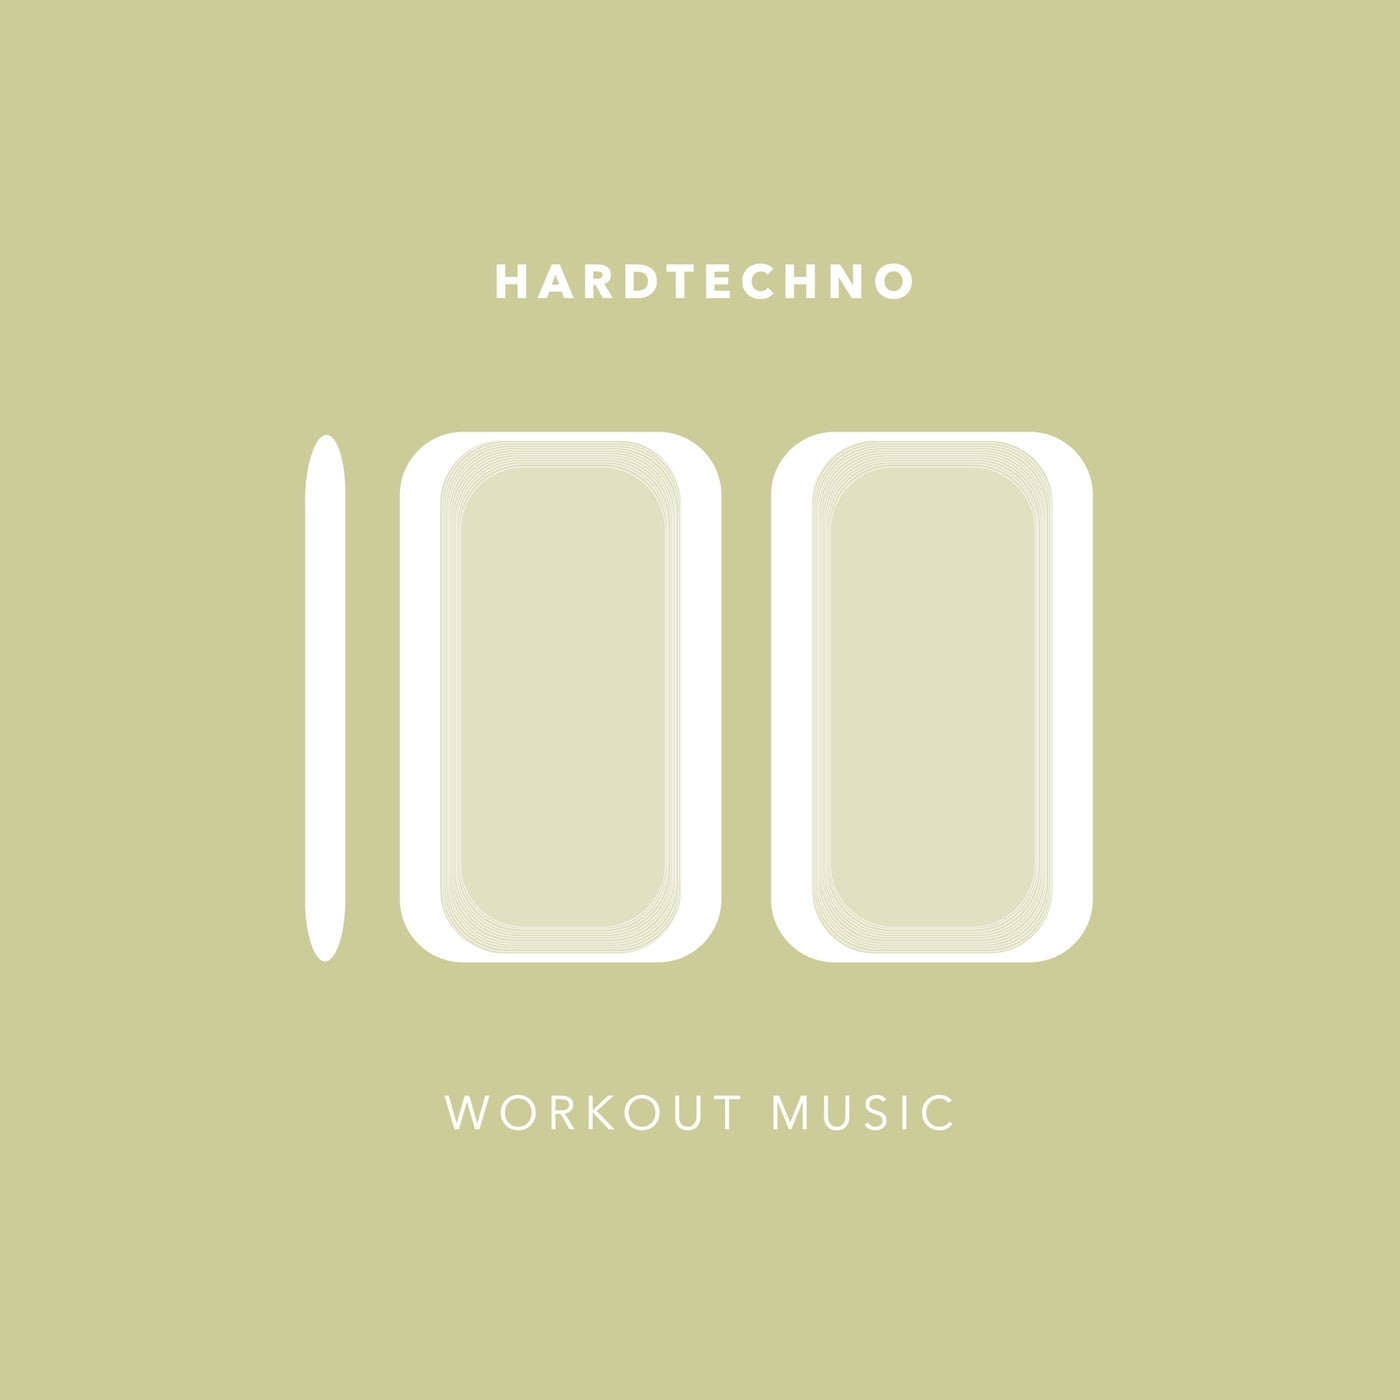 100 Hardtechno Workout Music